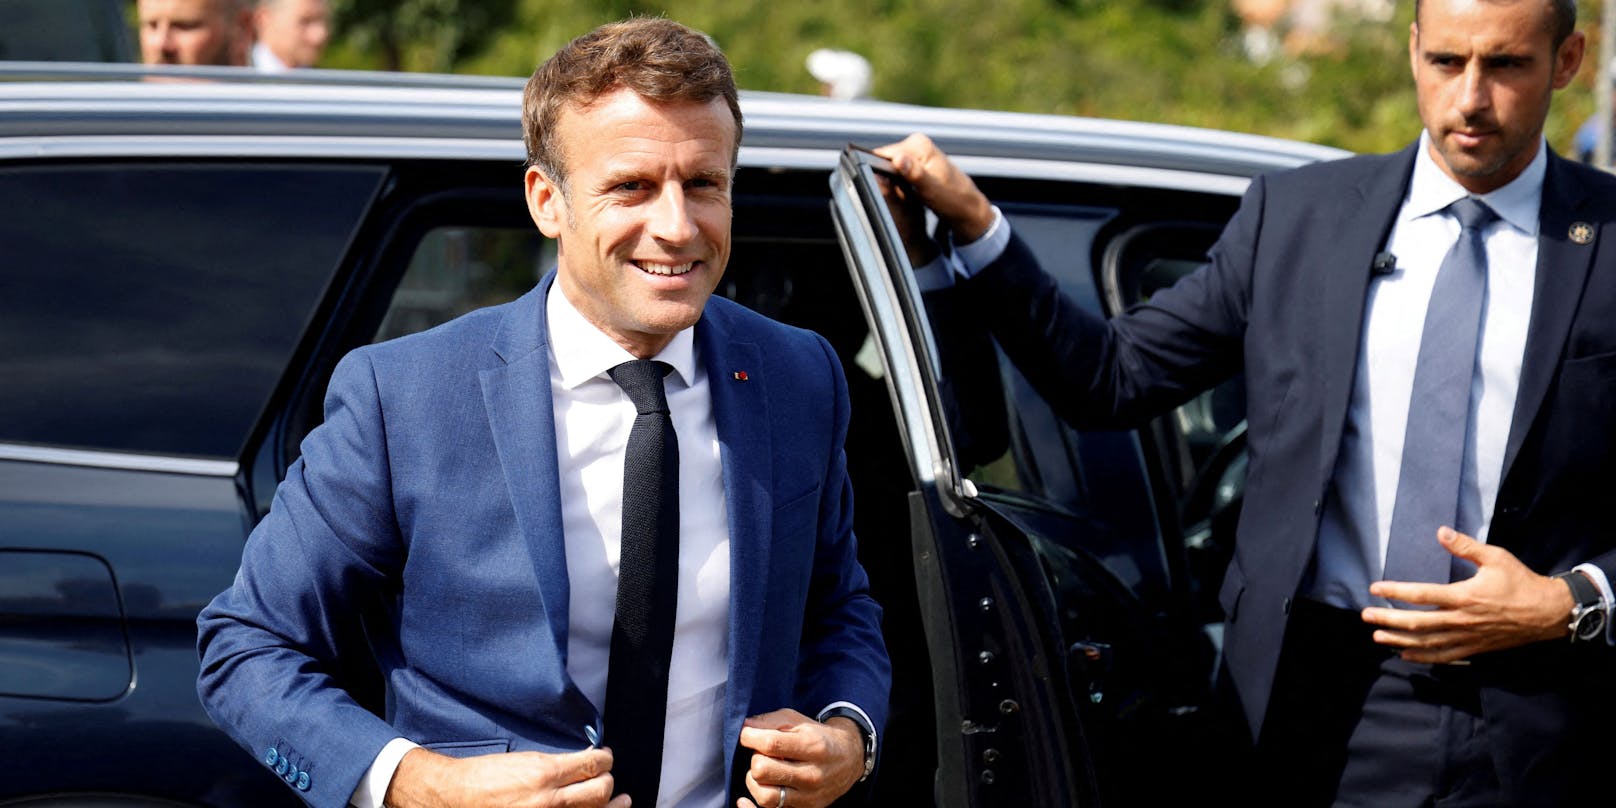 Frankreichs Präsident Emmanuel Macron 